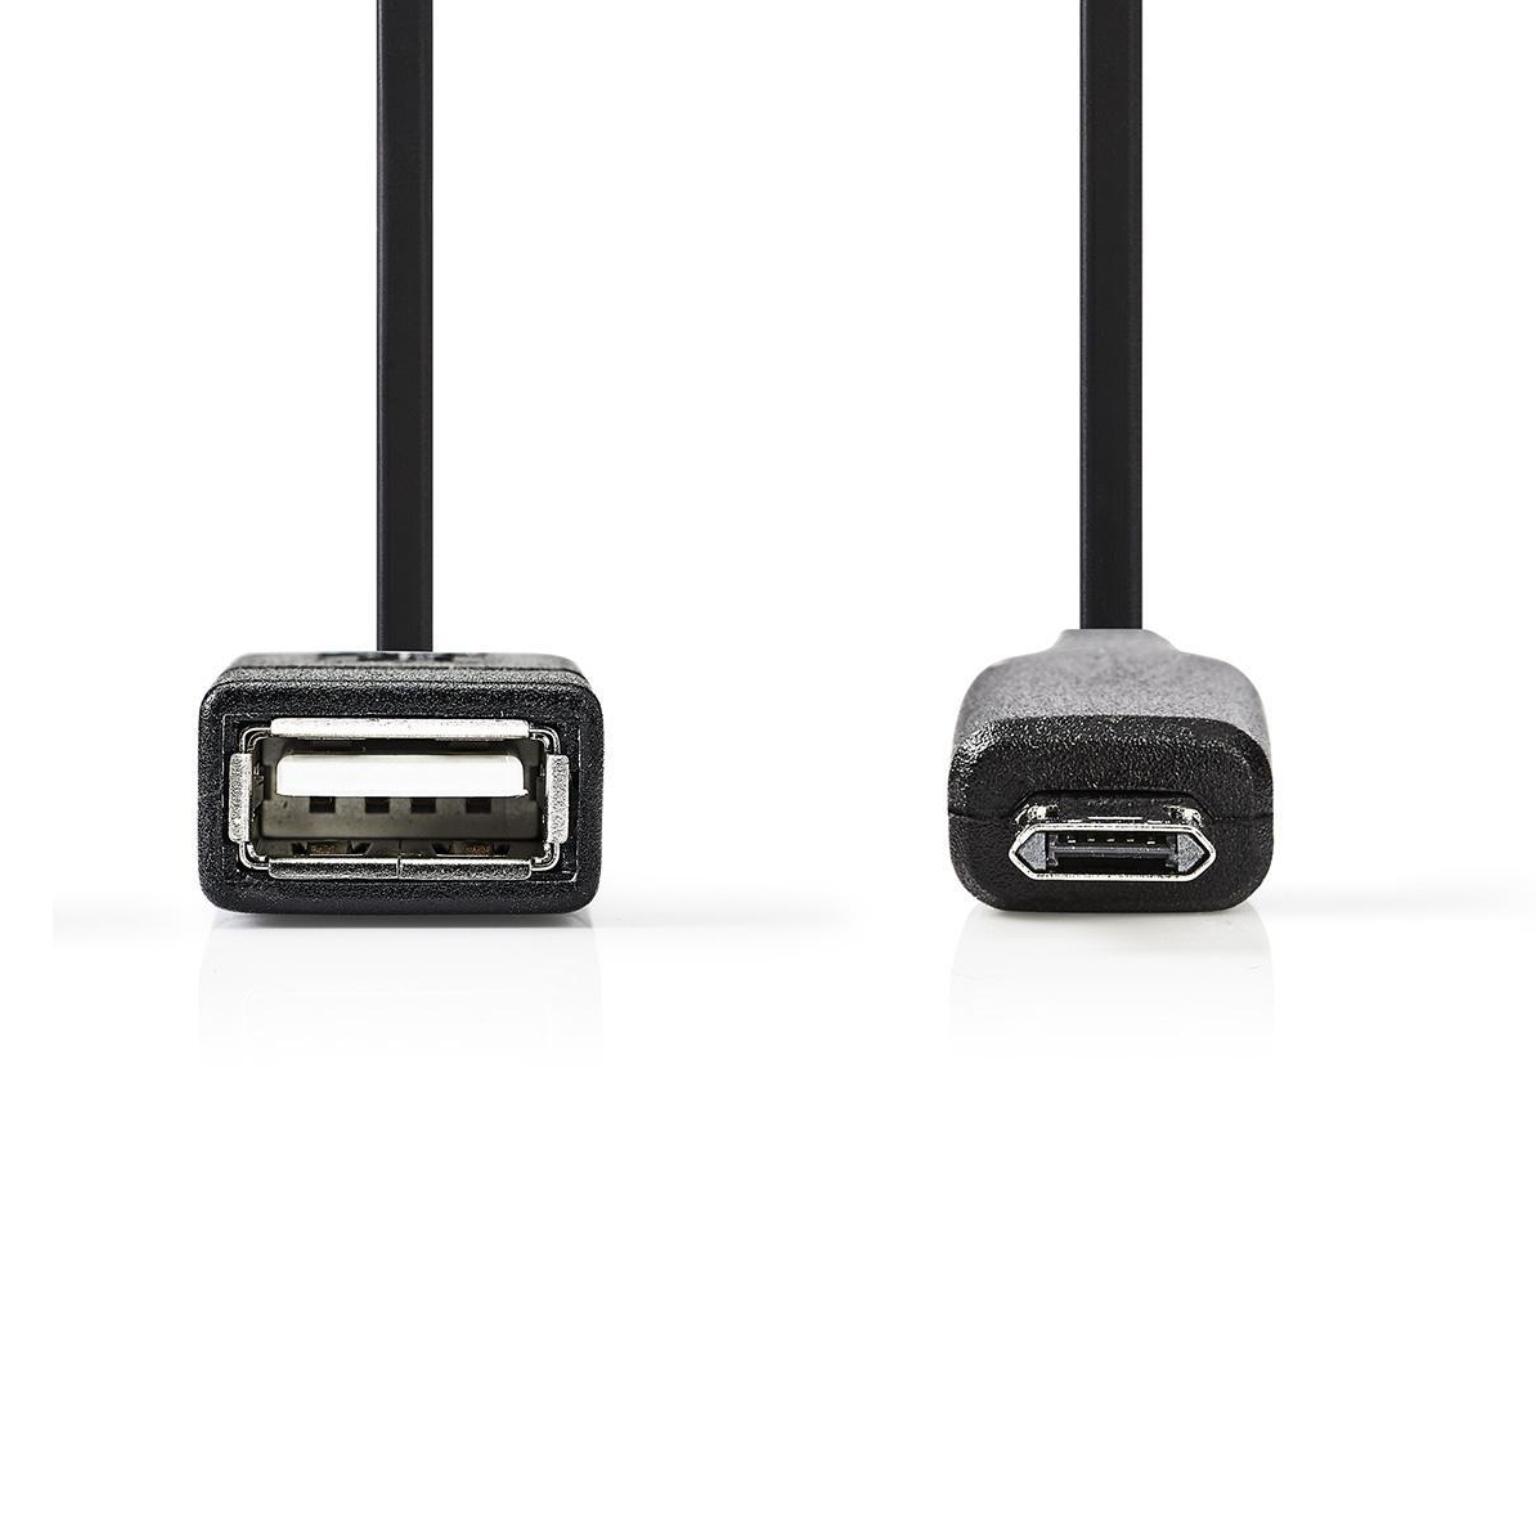 USB OTG adapter - Allteq